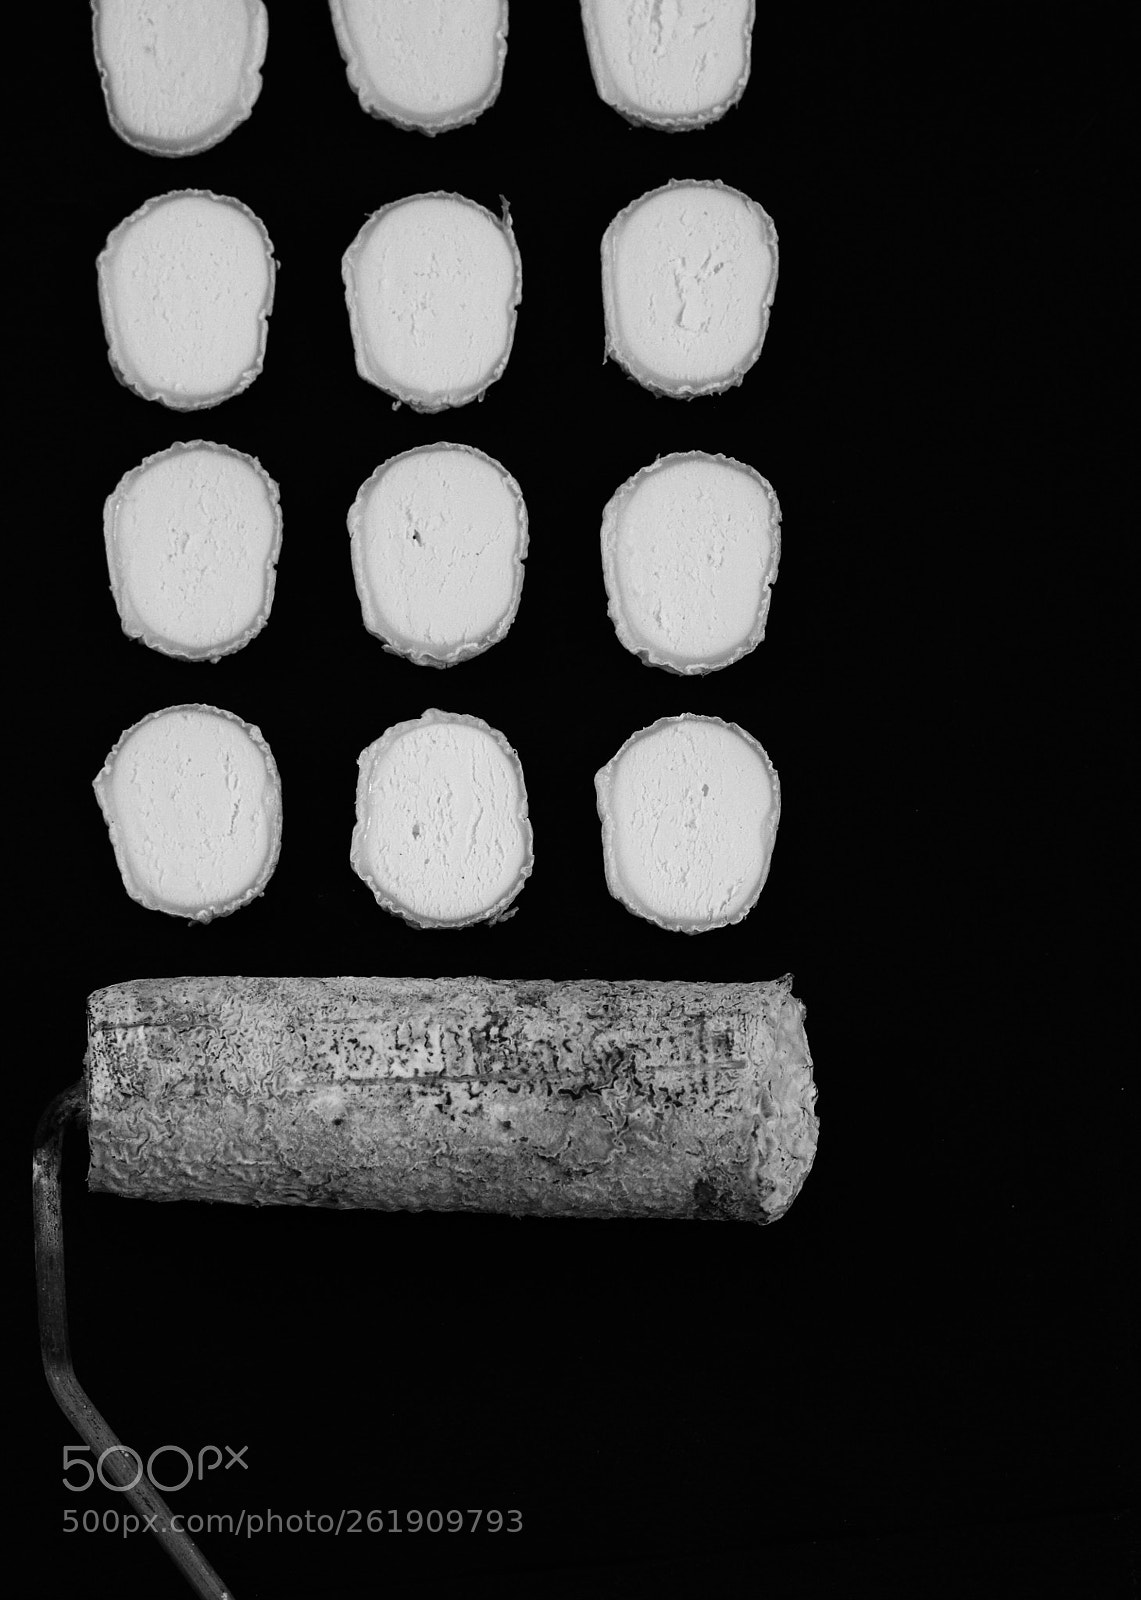 Pentax K-30 sample photo. Cheesebrush photography